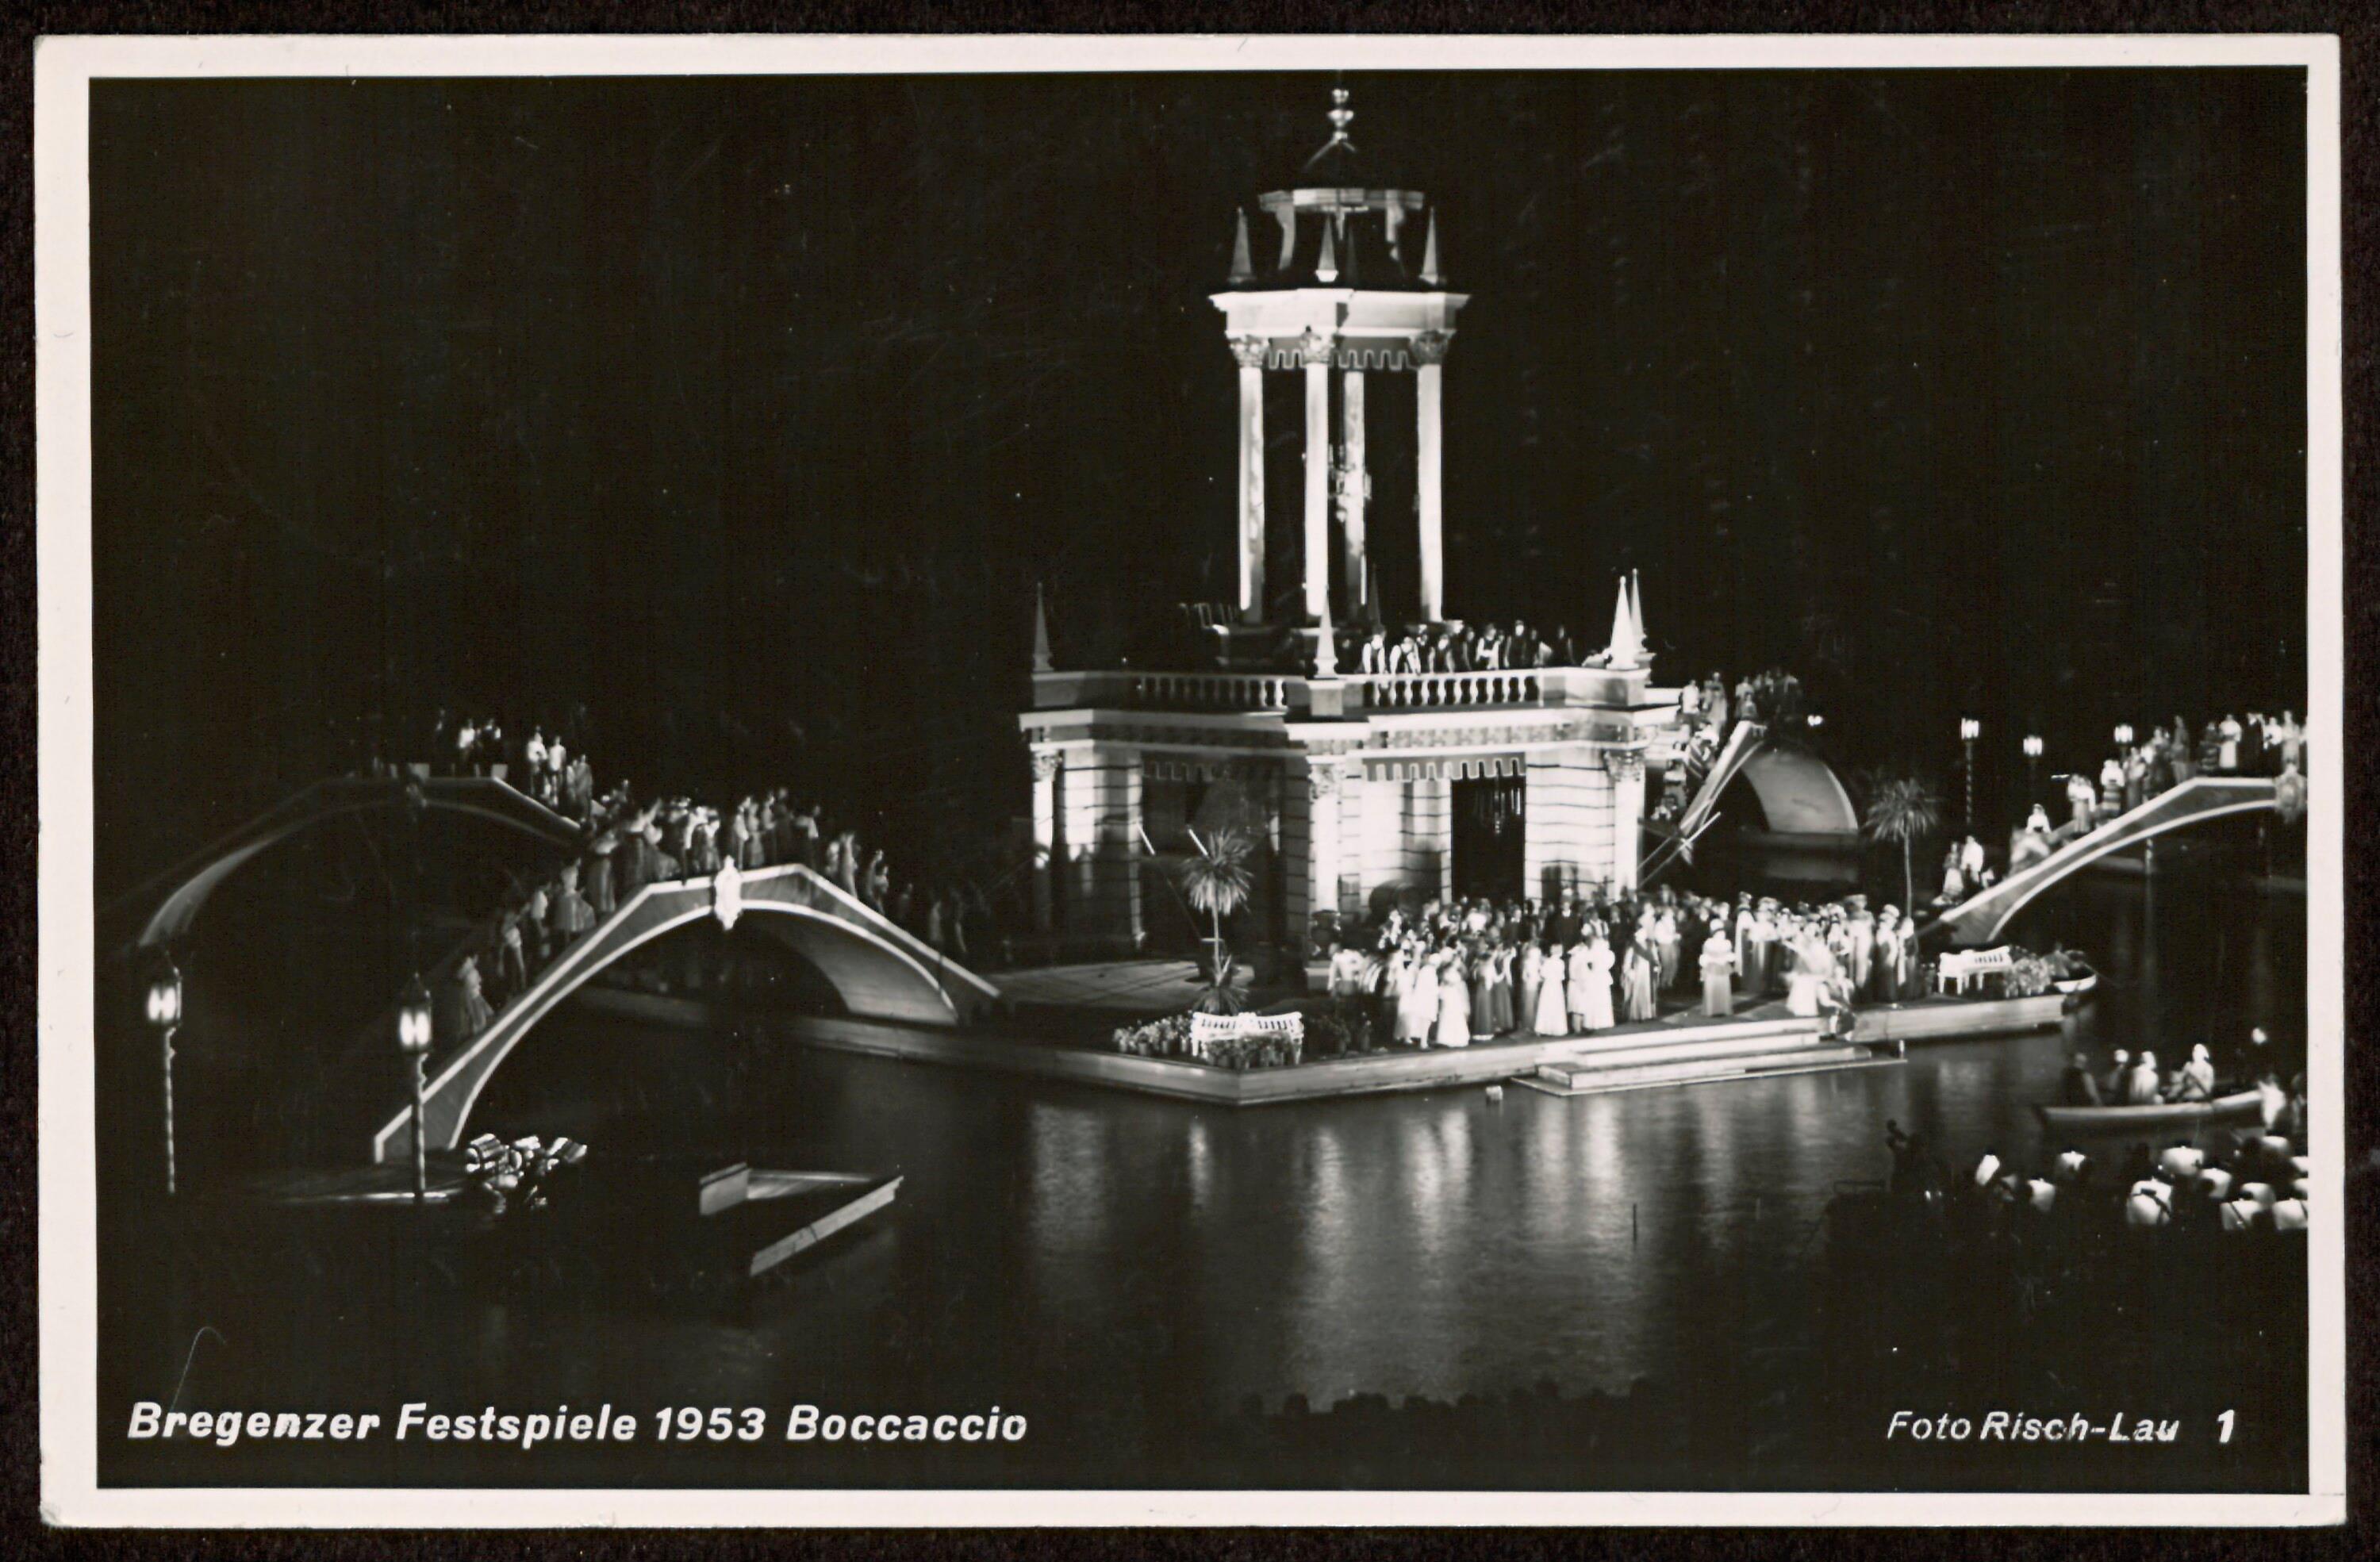 Bregenzer Festspiele 1953 Boccaccio></div>


    <hr>
    <div class=